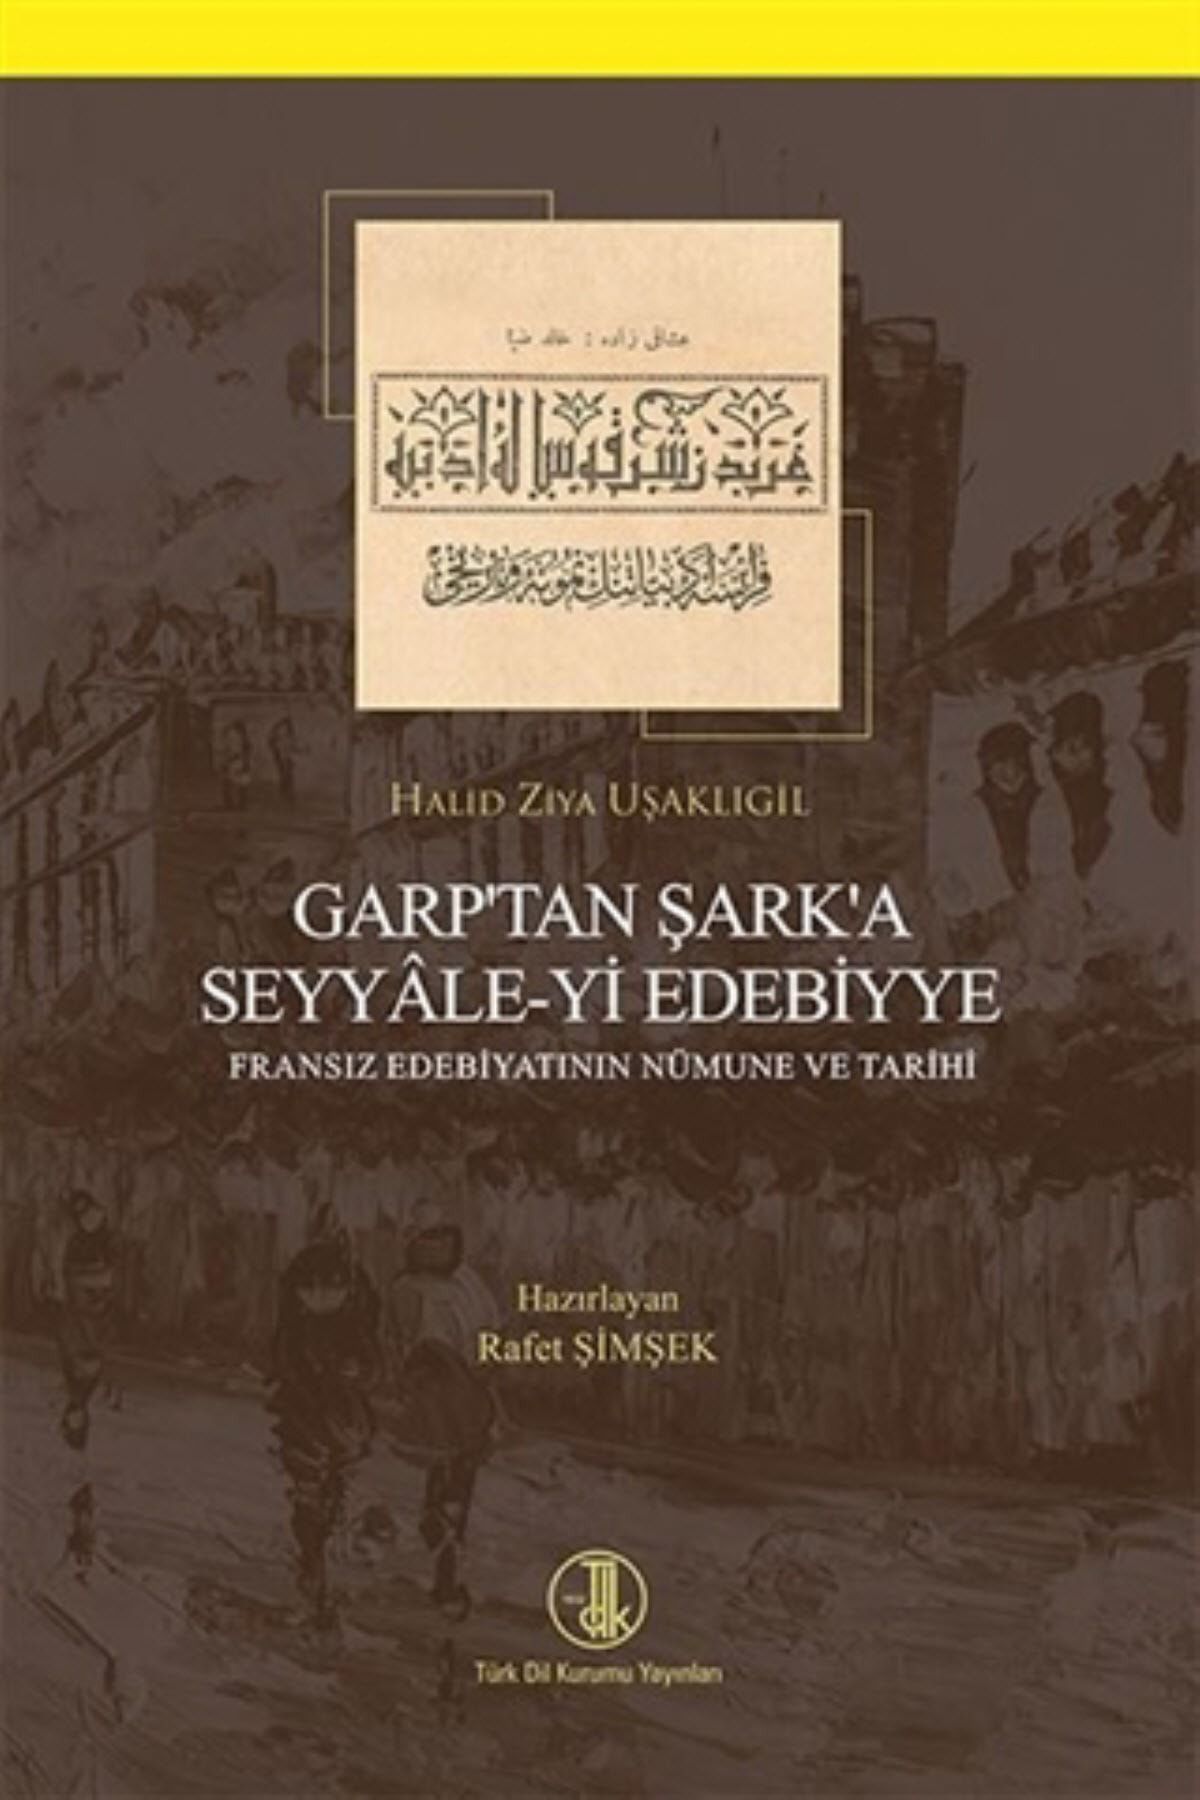 Türk Dil Kurumu Yayınları Garp'tan Şark'a Seyyale-yi Edebiyye - Halid Ziya Uşaklıgil